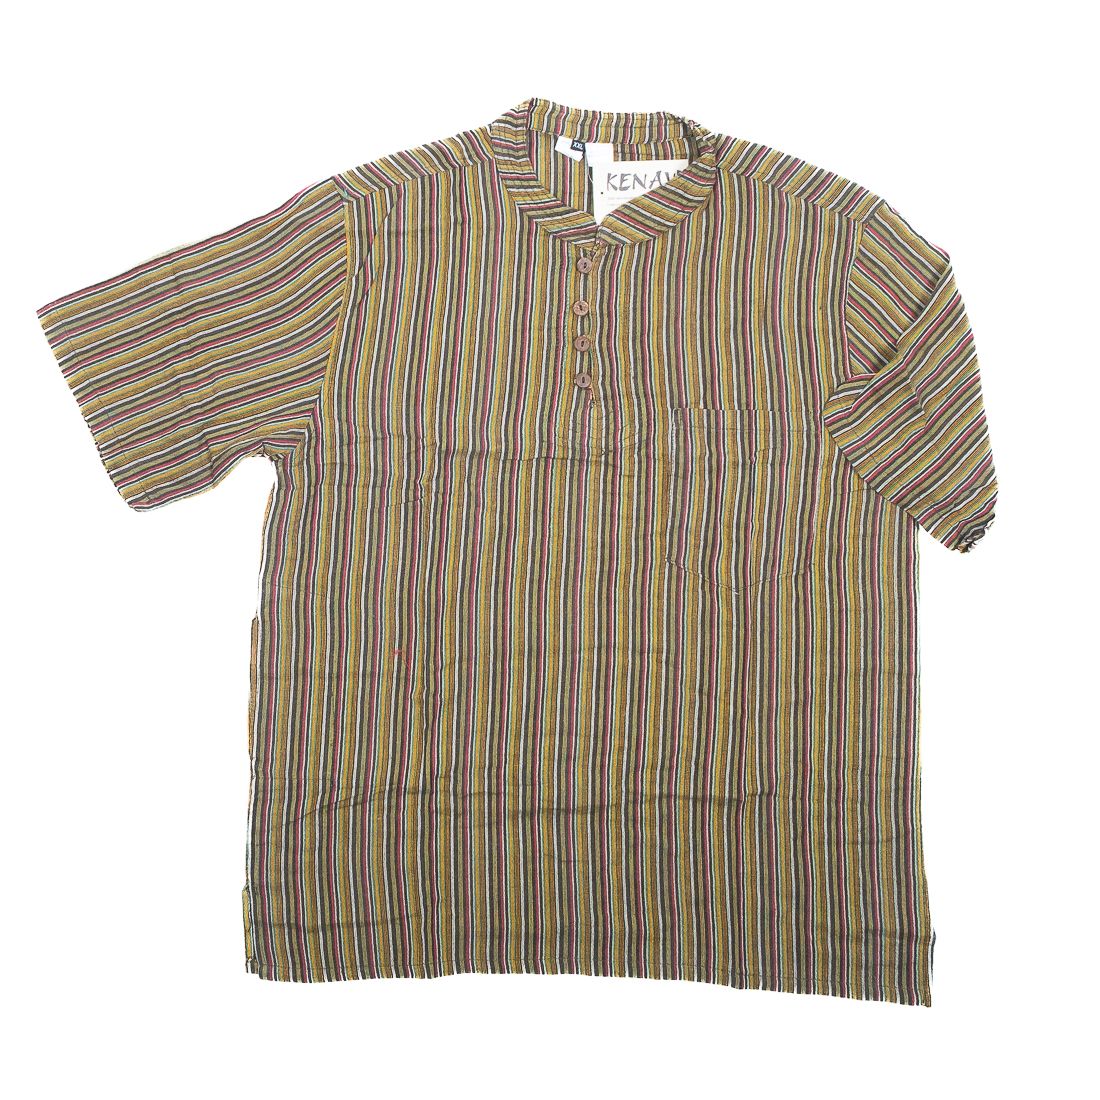 Pánská košile s krátkým rukávem NT0009-02-020 KENAVI